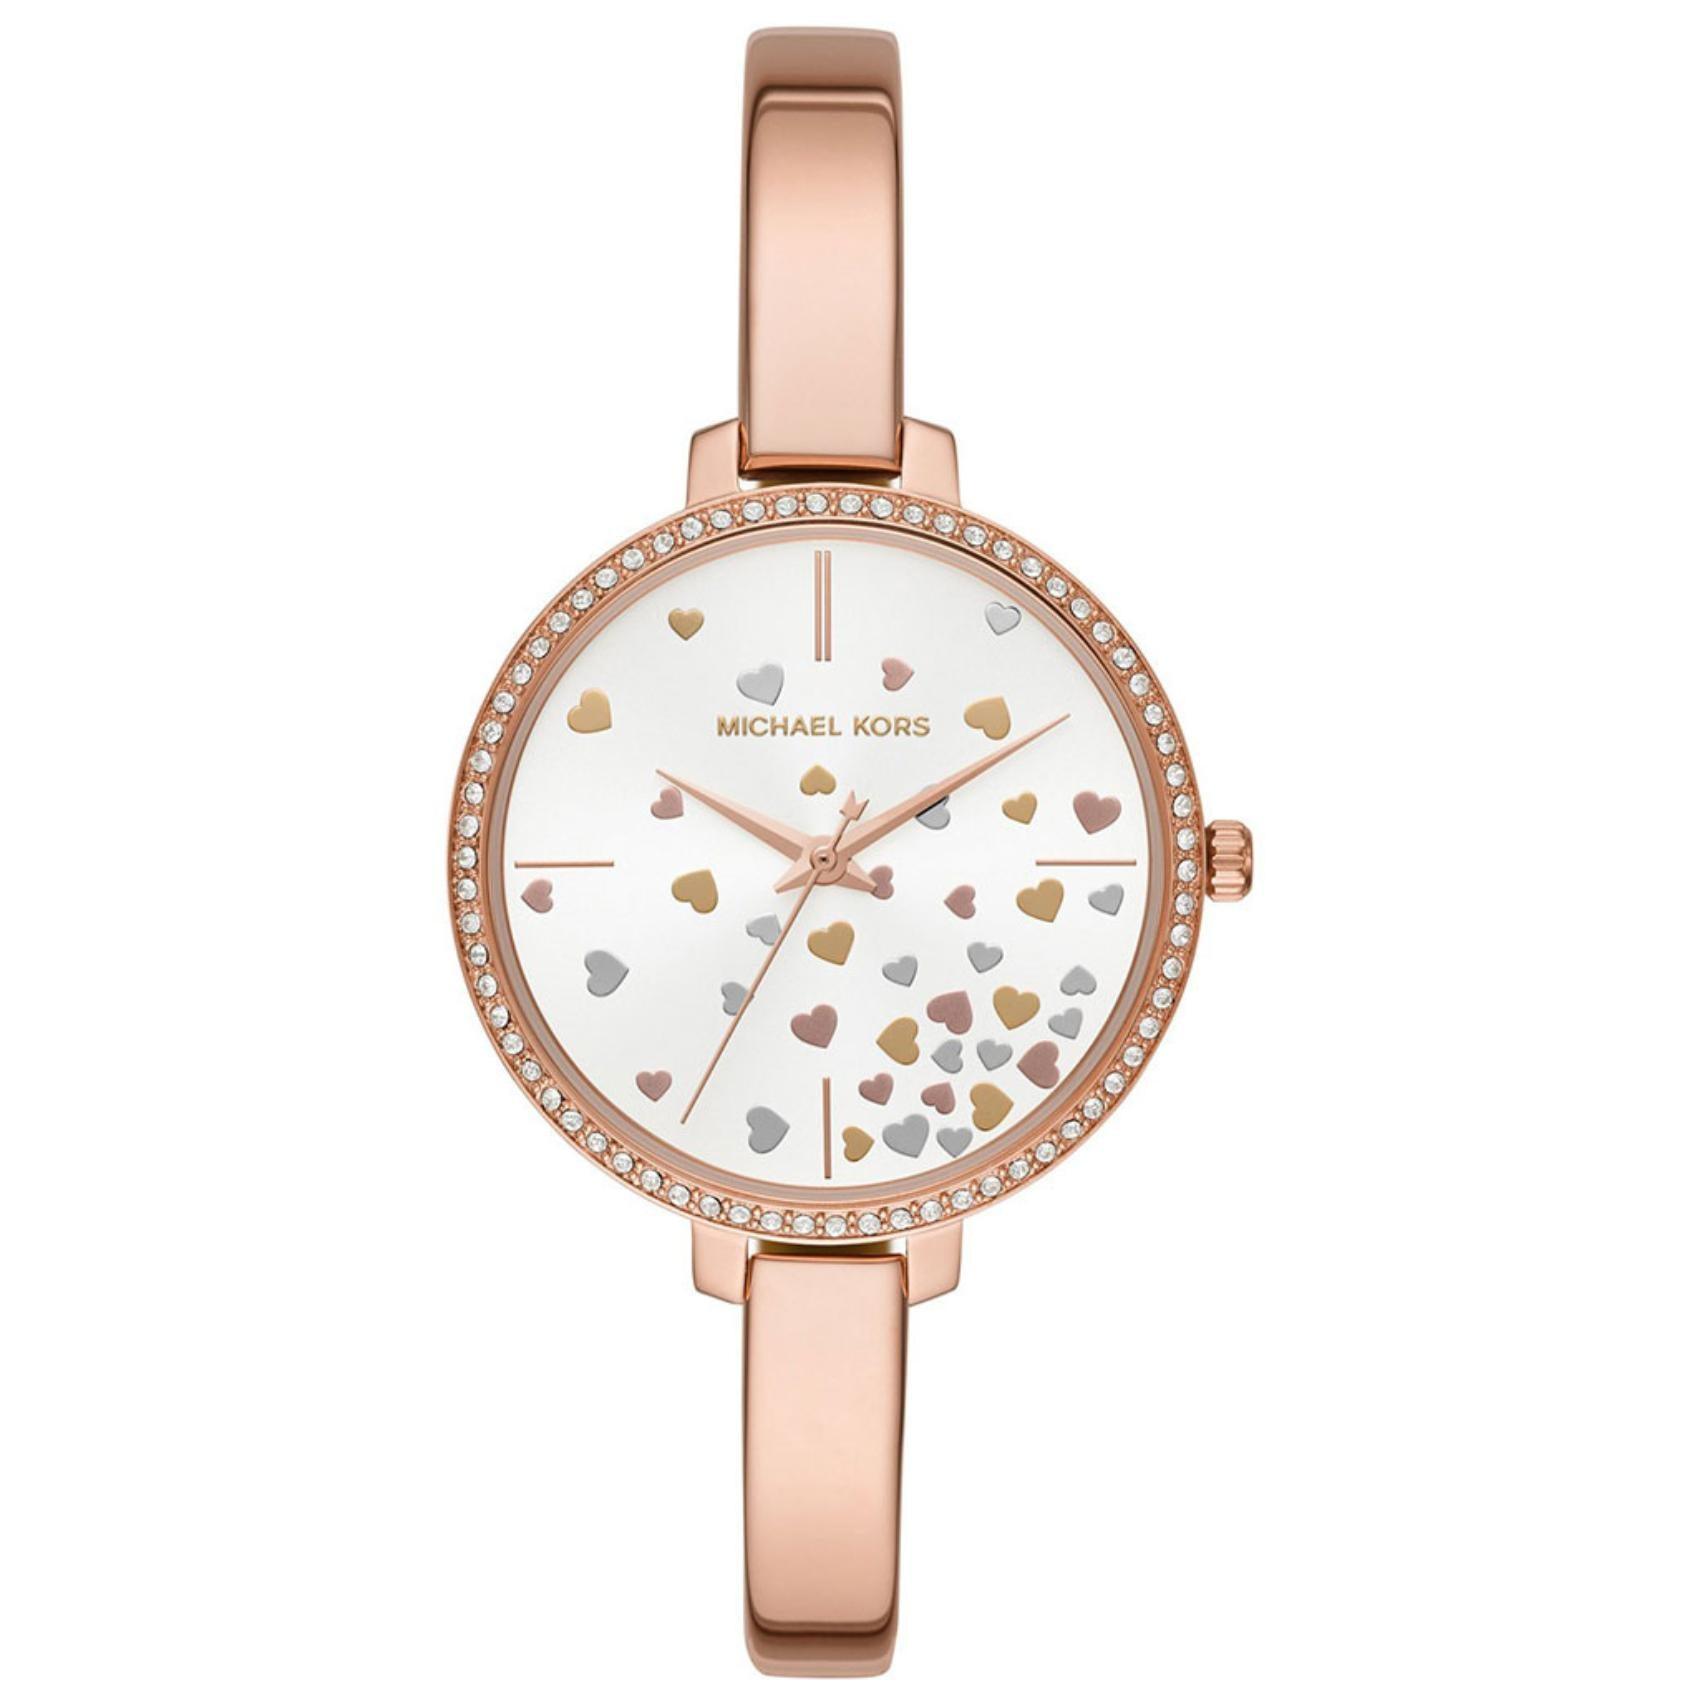 Γυναικείο ρολόι Michael Kors Jaryn MK3978 με λεπτό ροζ χρυσό μπρασελέ, στρογγυλό άσπρο καντράν με ροζ χρυσές καρδιές και στεφάνι 36mm με ζιργκόν.